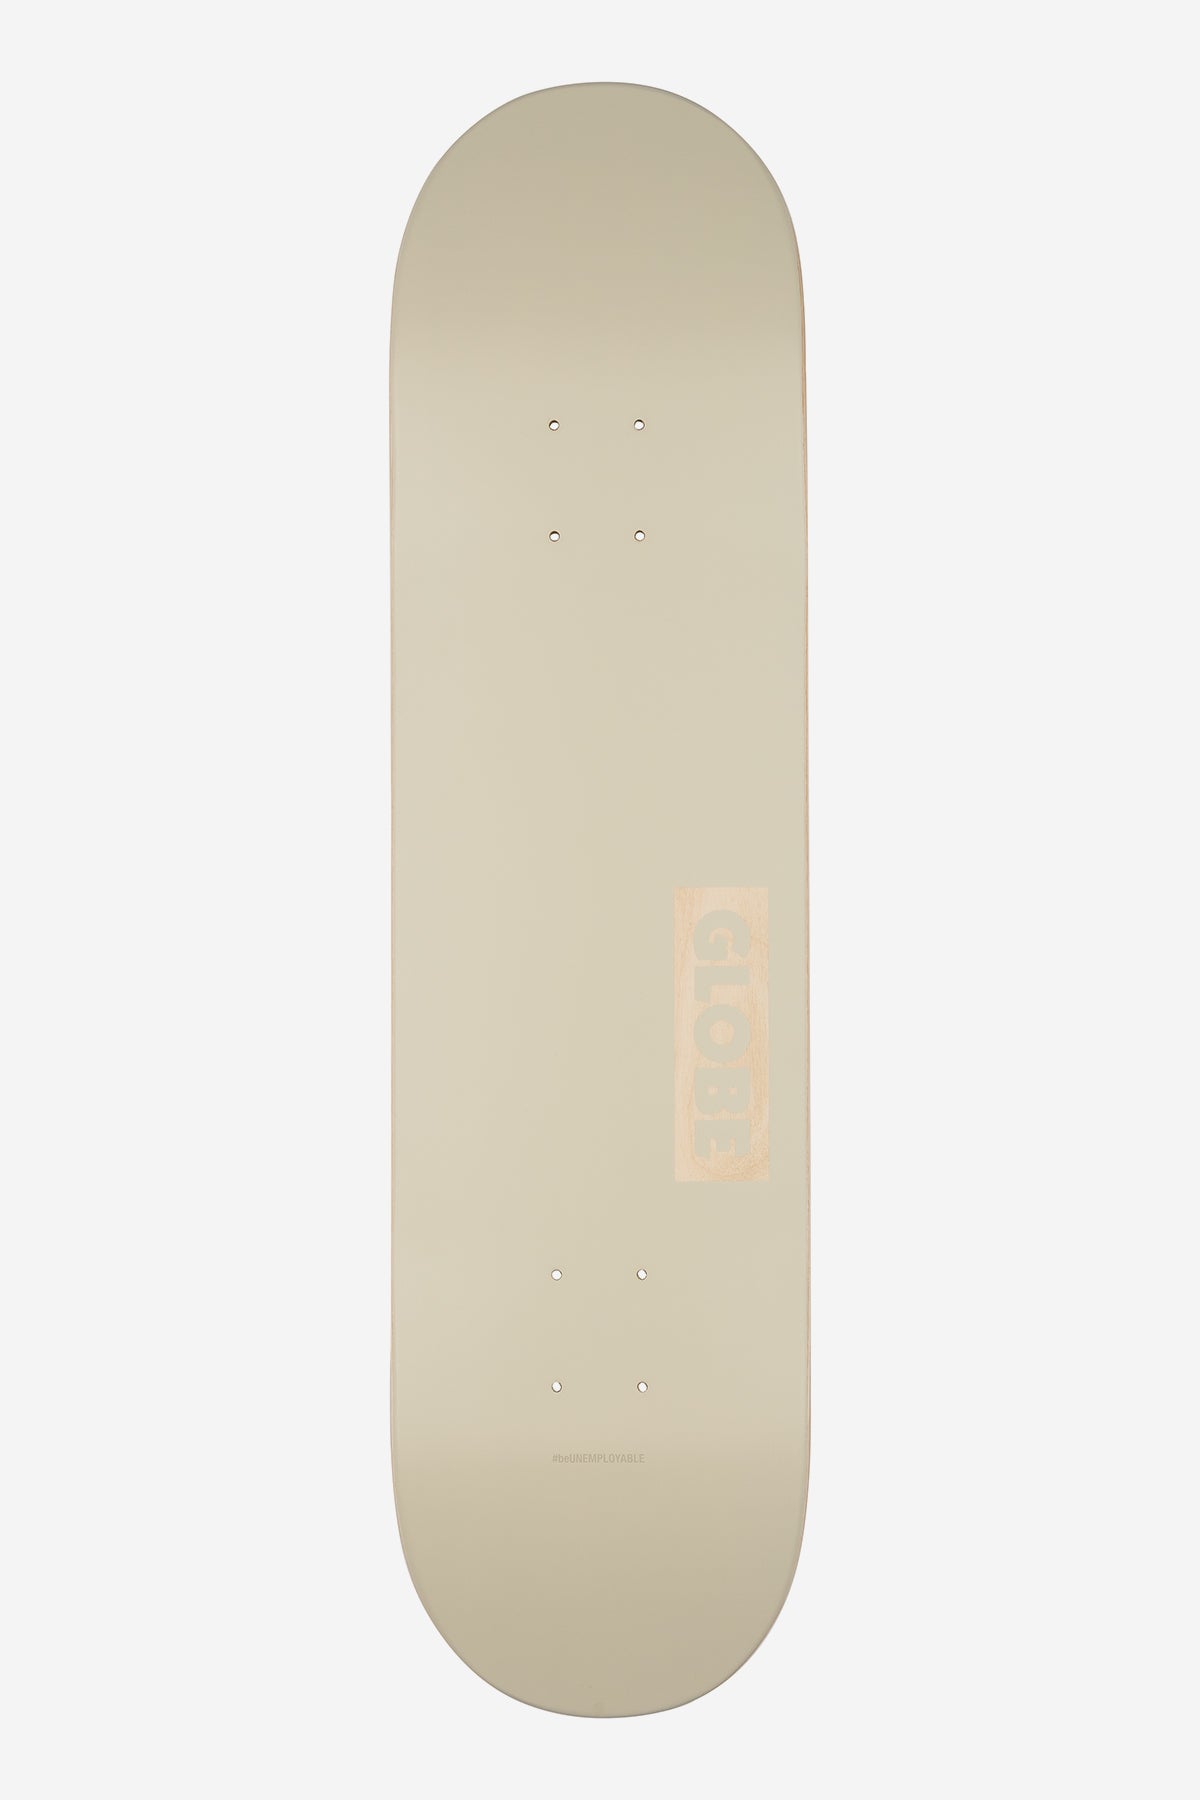 Goodstock - Off White- 8.0" Complete Skateboard